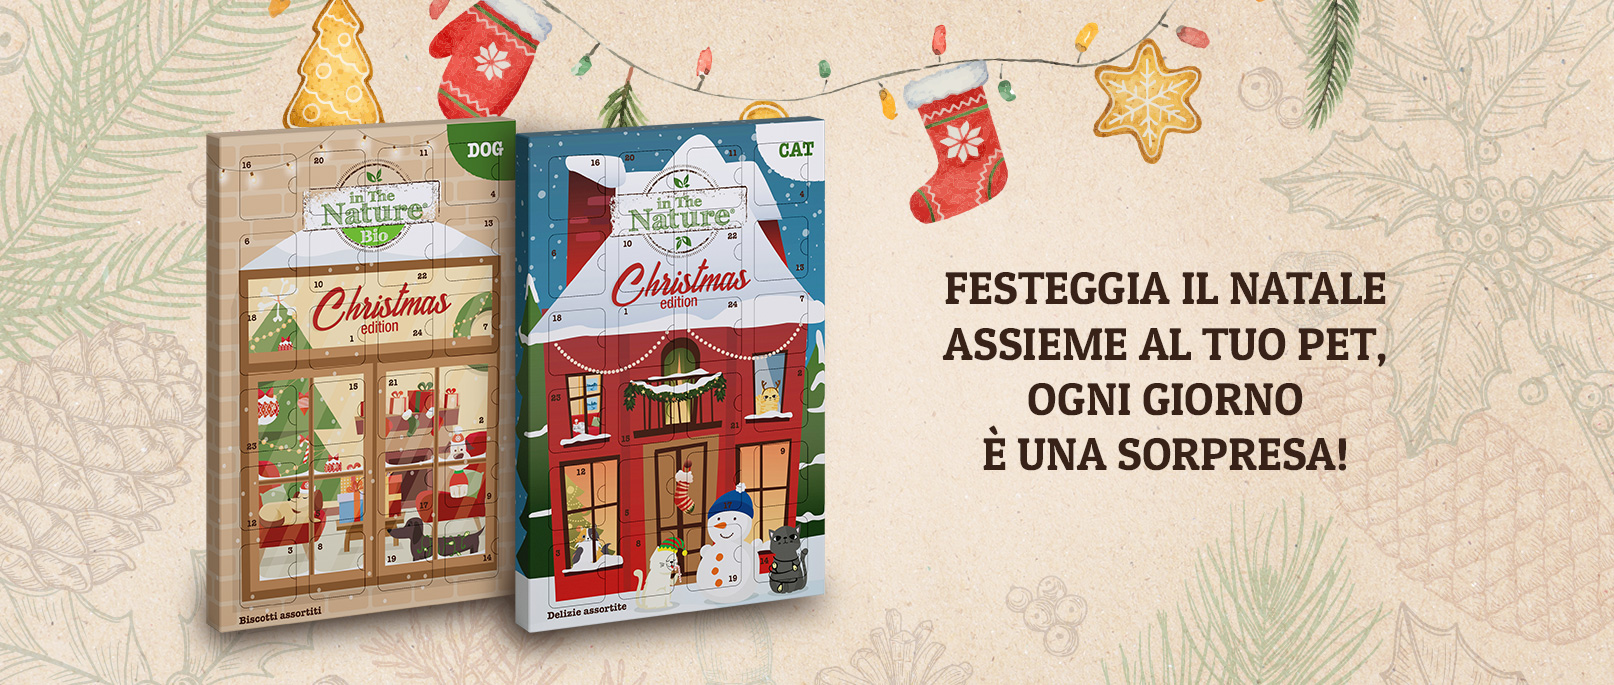 In The Nature® Christmas edition: Calendario dell’Avvento